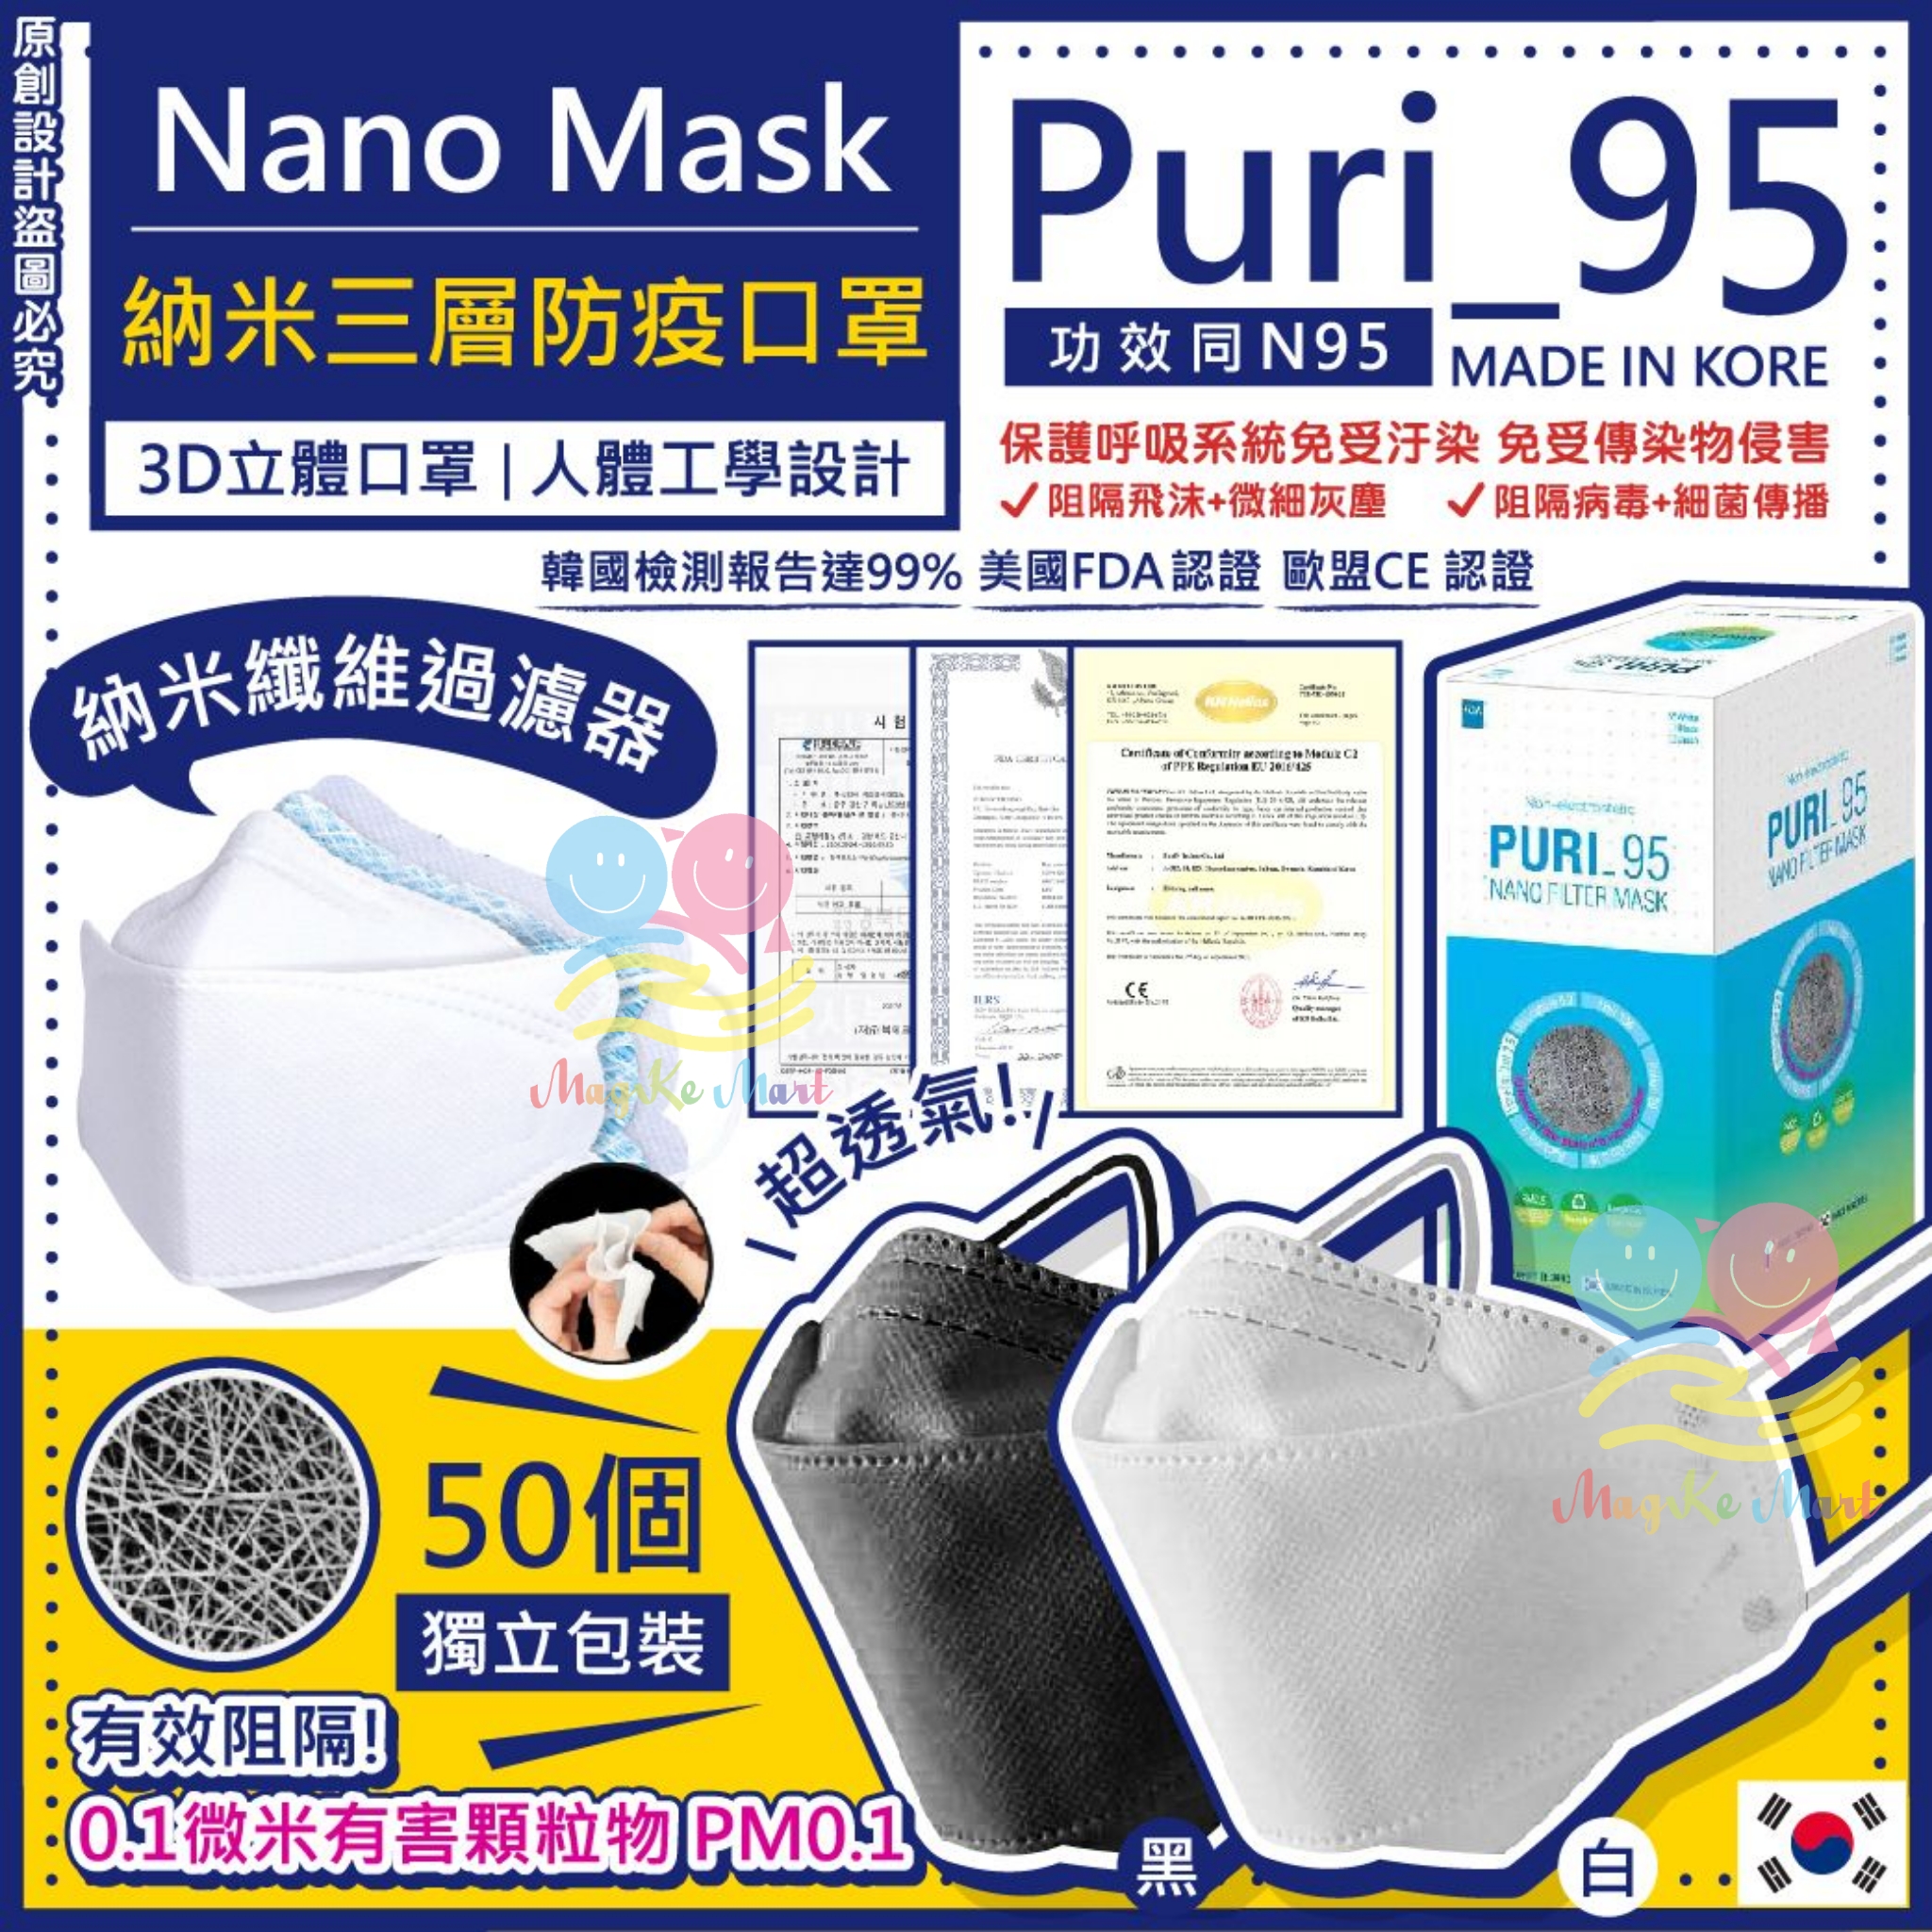 韓國 Puri_95 Nano Mask 納米三層防疫成人口罩(1盒50個)(獨立包裝) (B) 白色